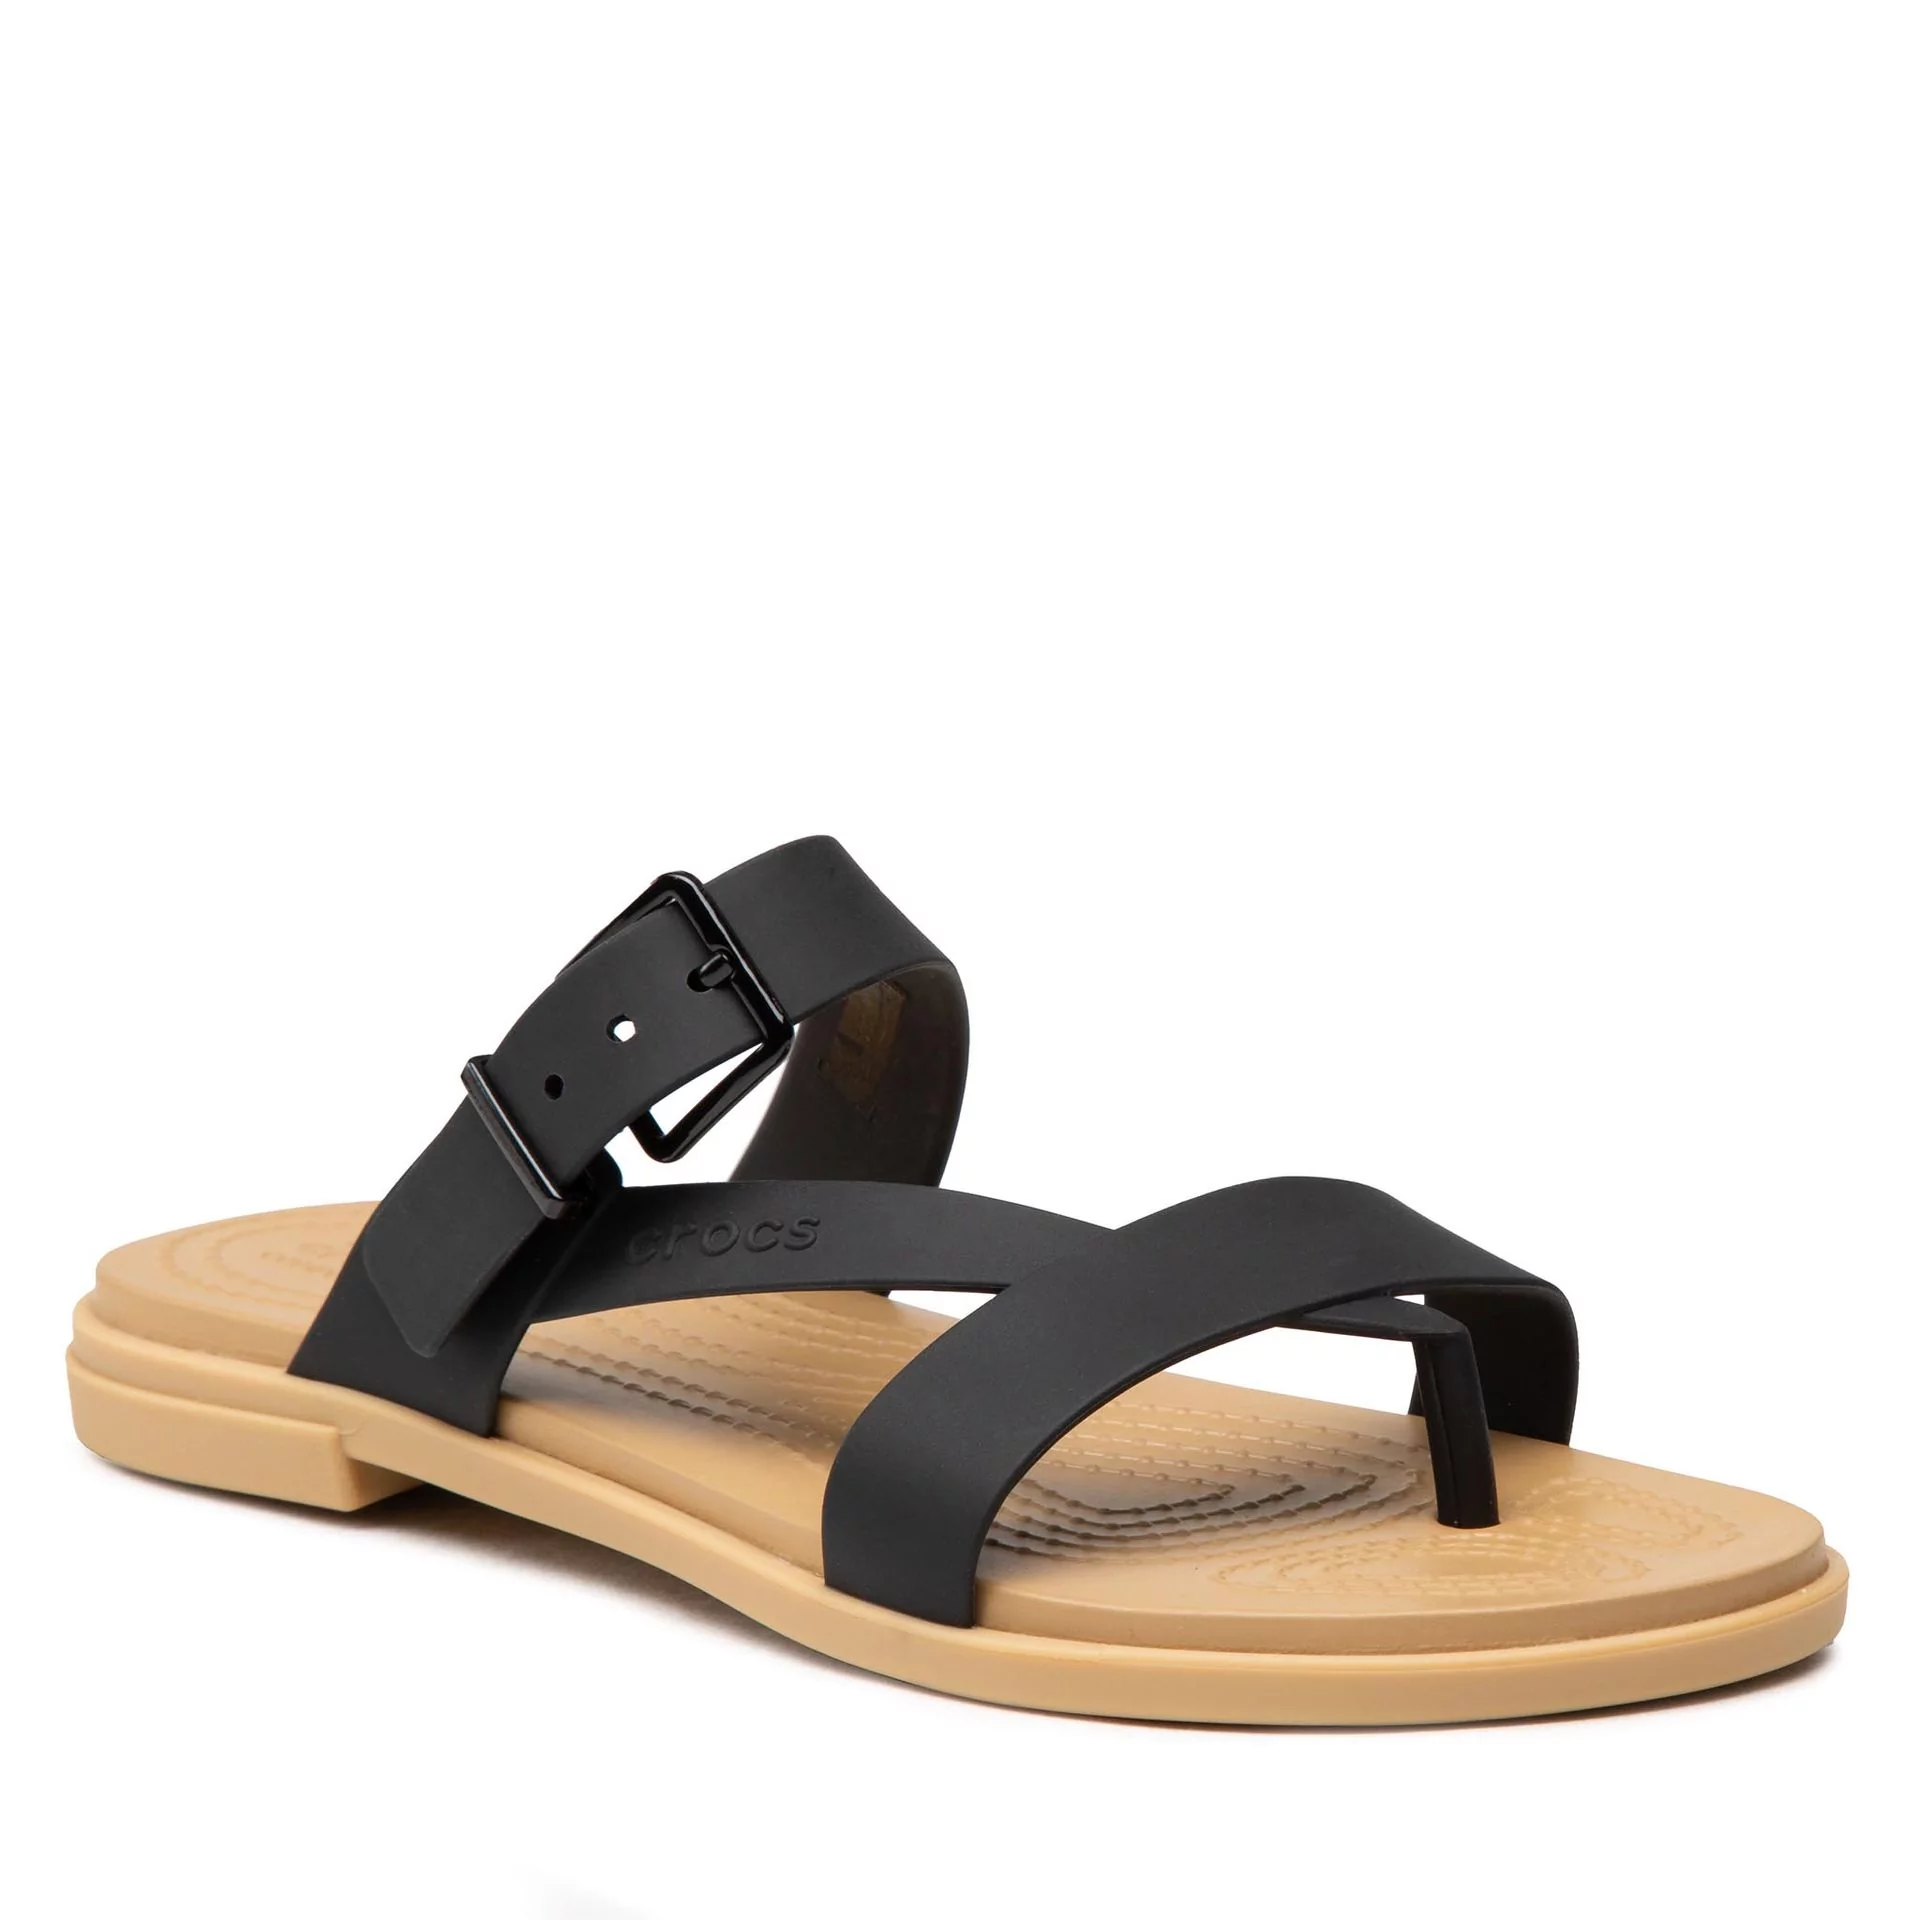 Crocs Japonki Tulum Toe Post Sandal W 206108 Black/Tan